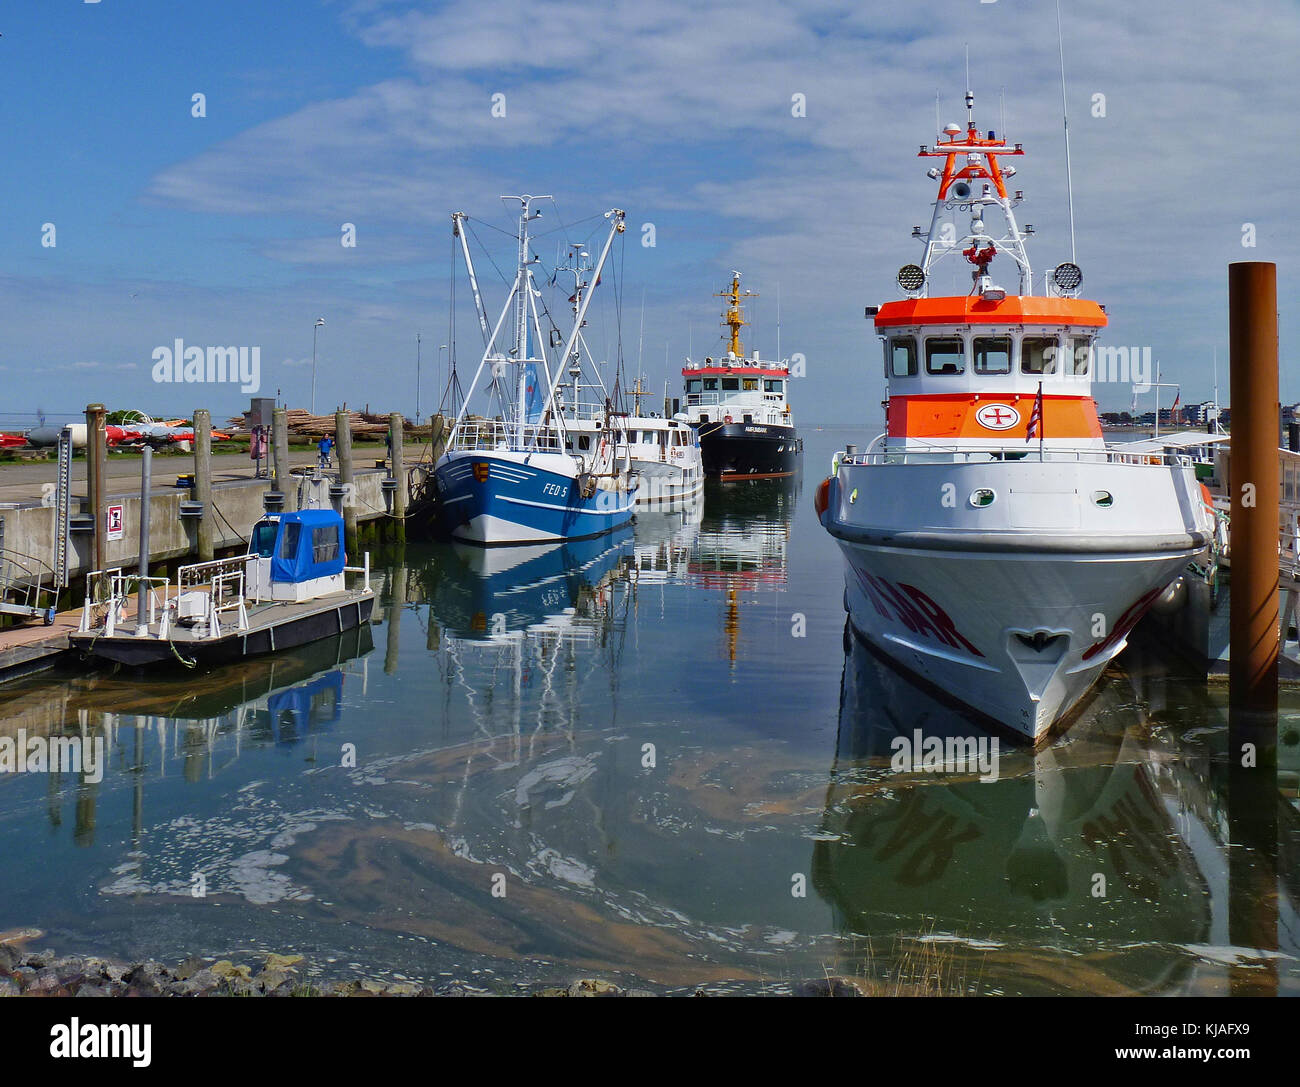 Amrum, Deutschland - 27. Mai 2016 - Hafen auf der Insel Amrum mit Fischerbooten und Rettungsboot an ihren Liegeplätzen Stockfoto